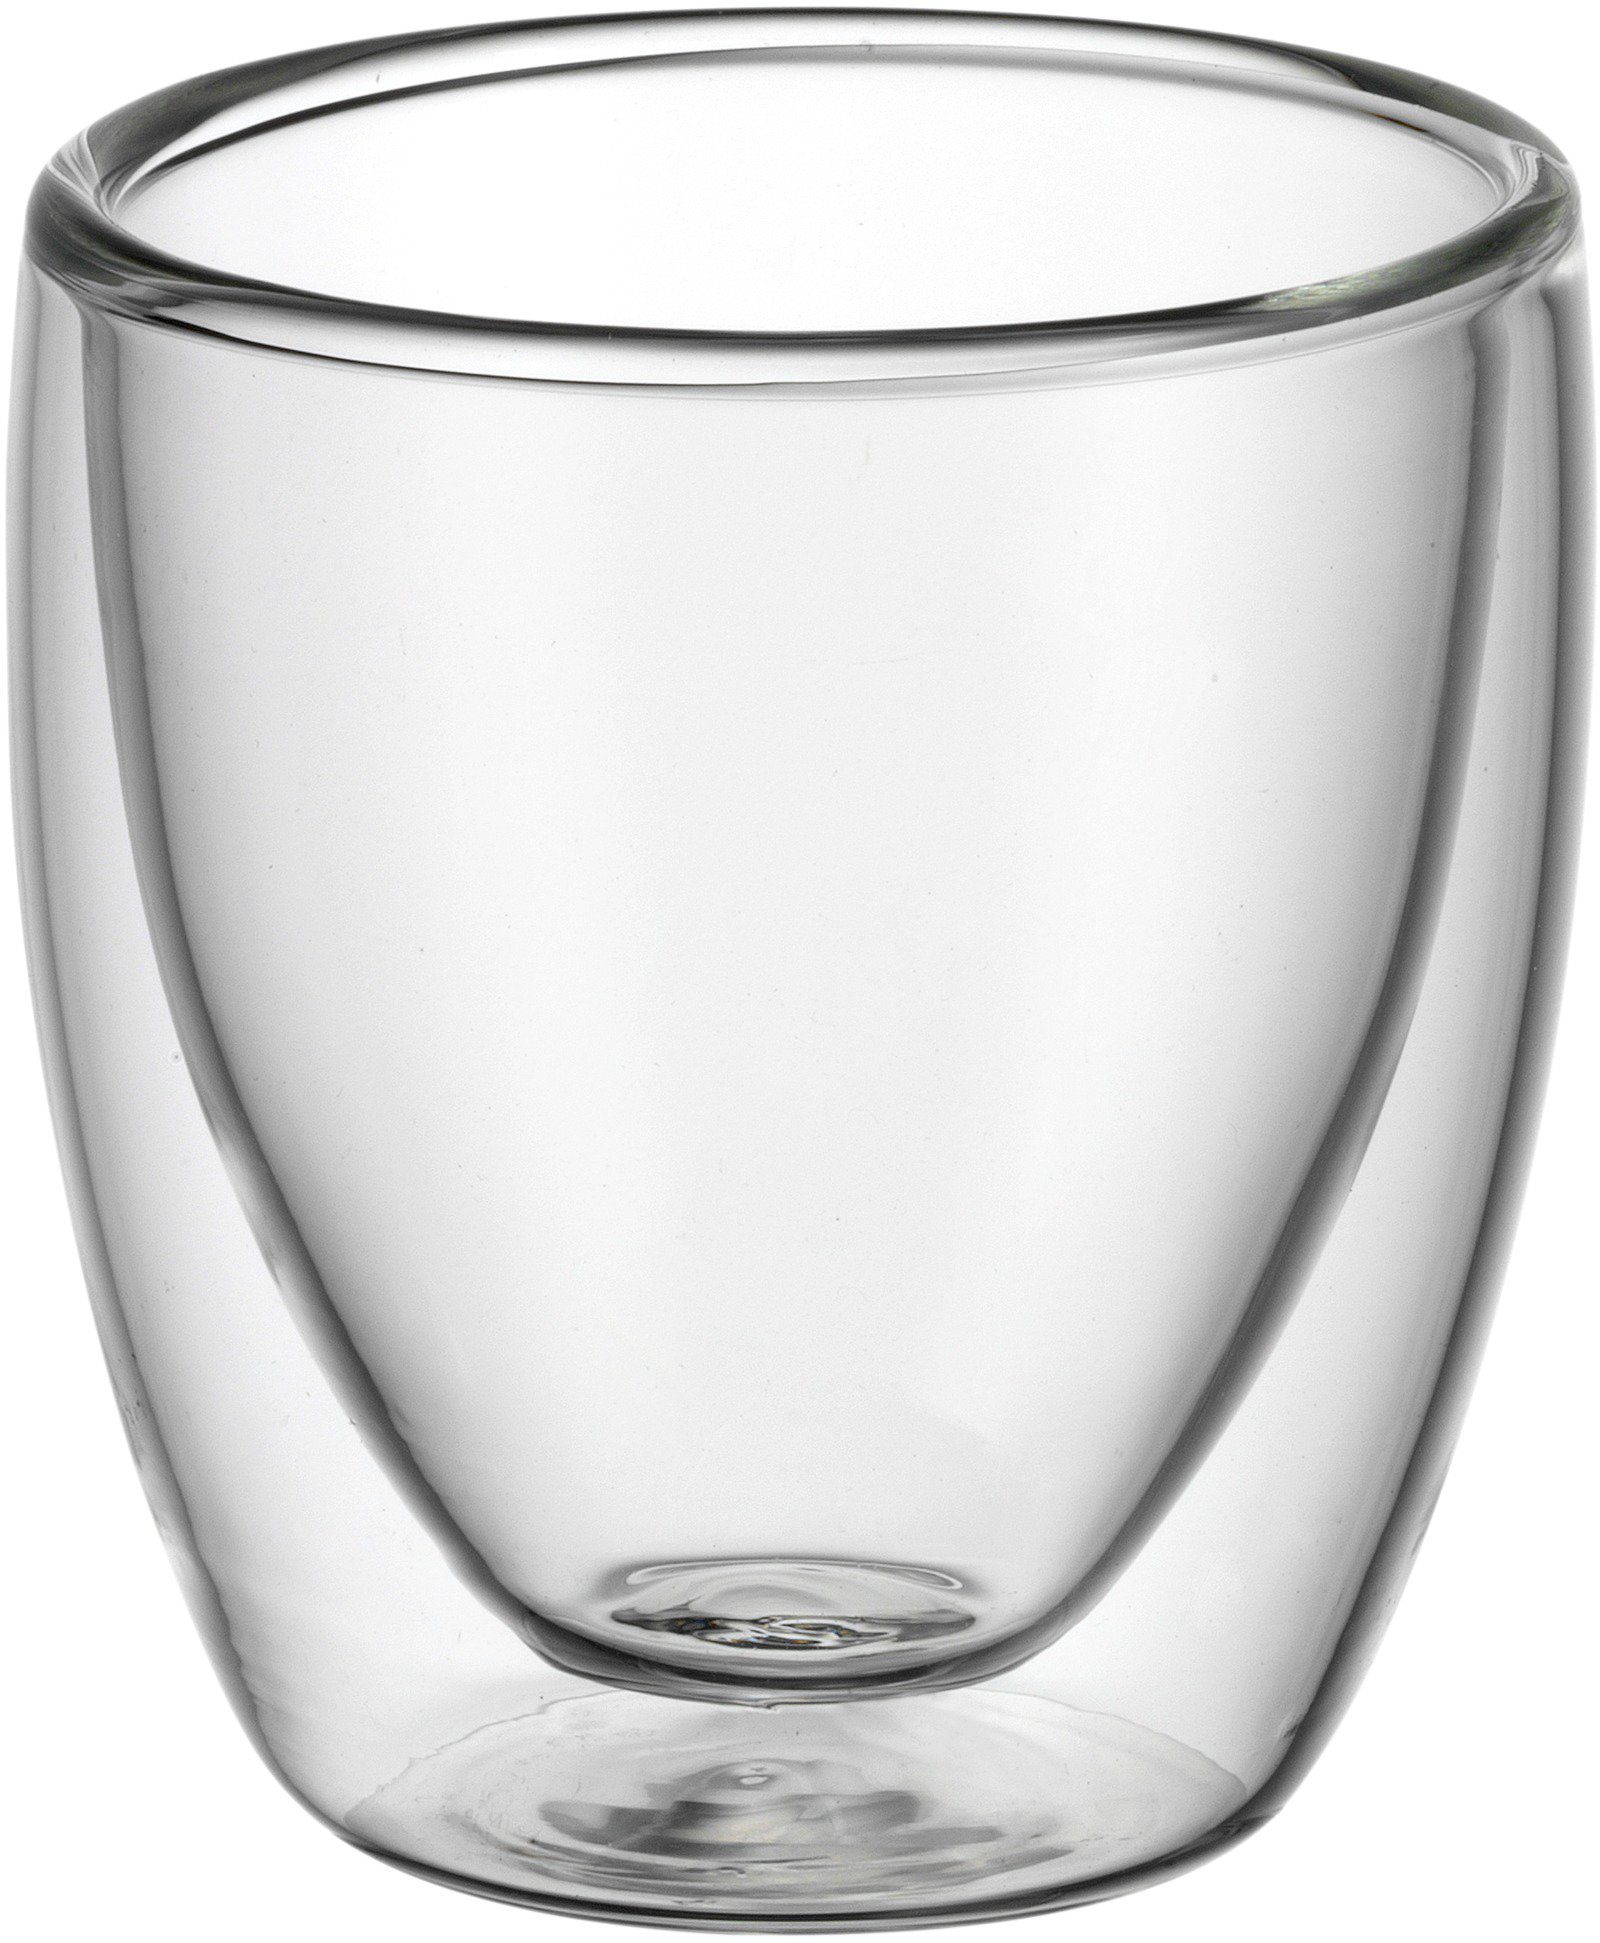 WMF Gläser-Set »Kult«, Glas, wärmeisolierend, 6-teilig online kaufen | OTTO